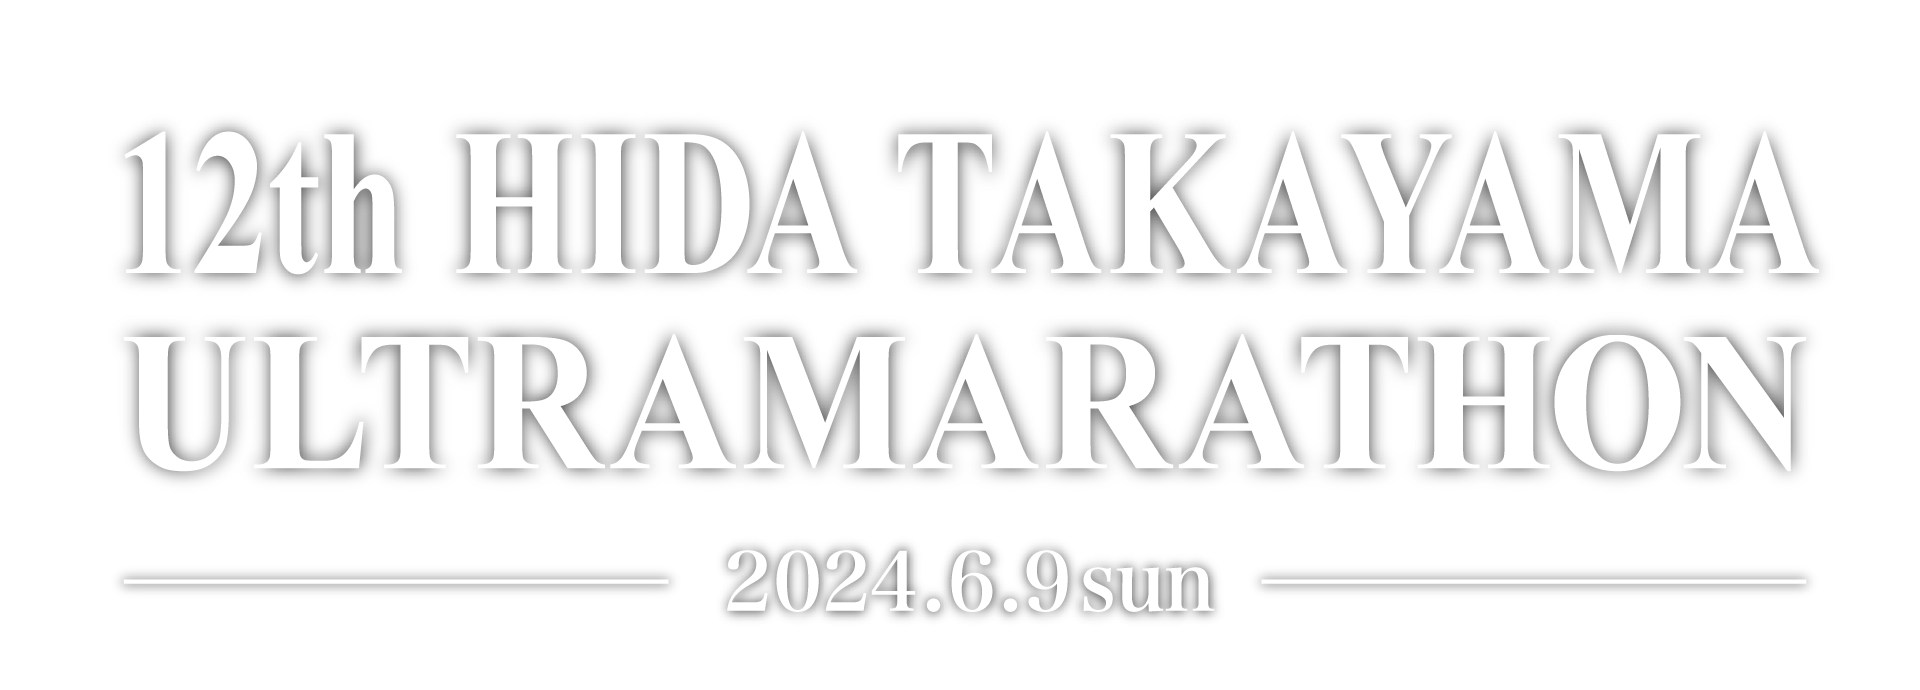 HIDA TAKAYAMA 100km ULTRAMARATHON 2024.06.09 Sun